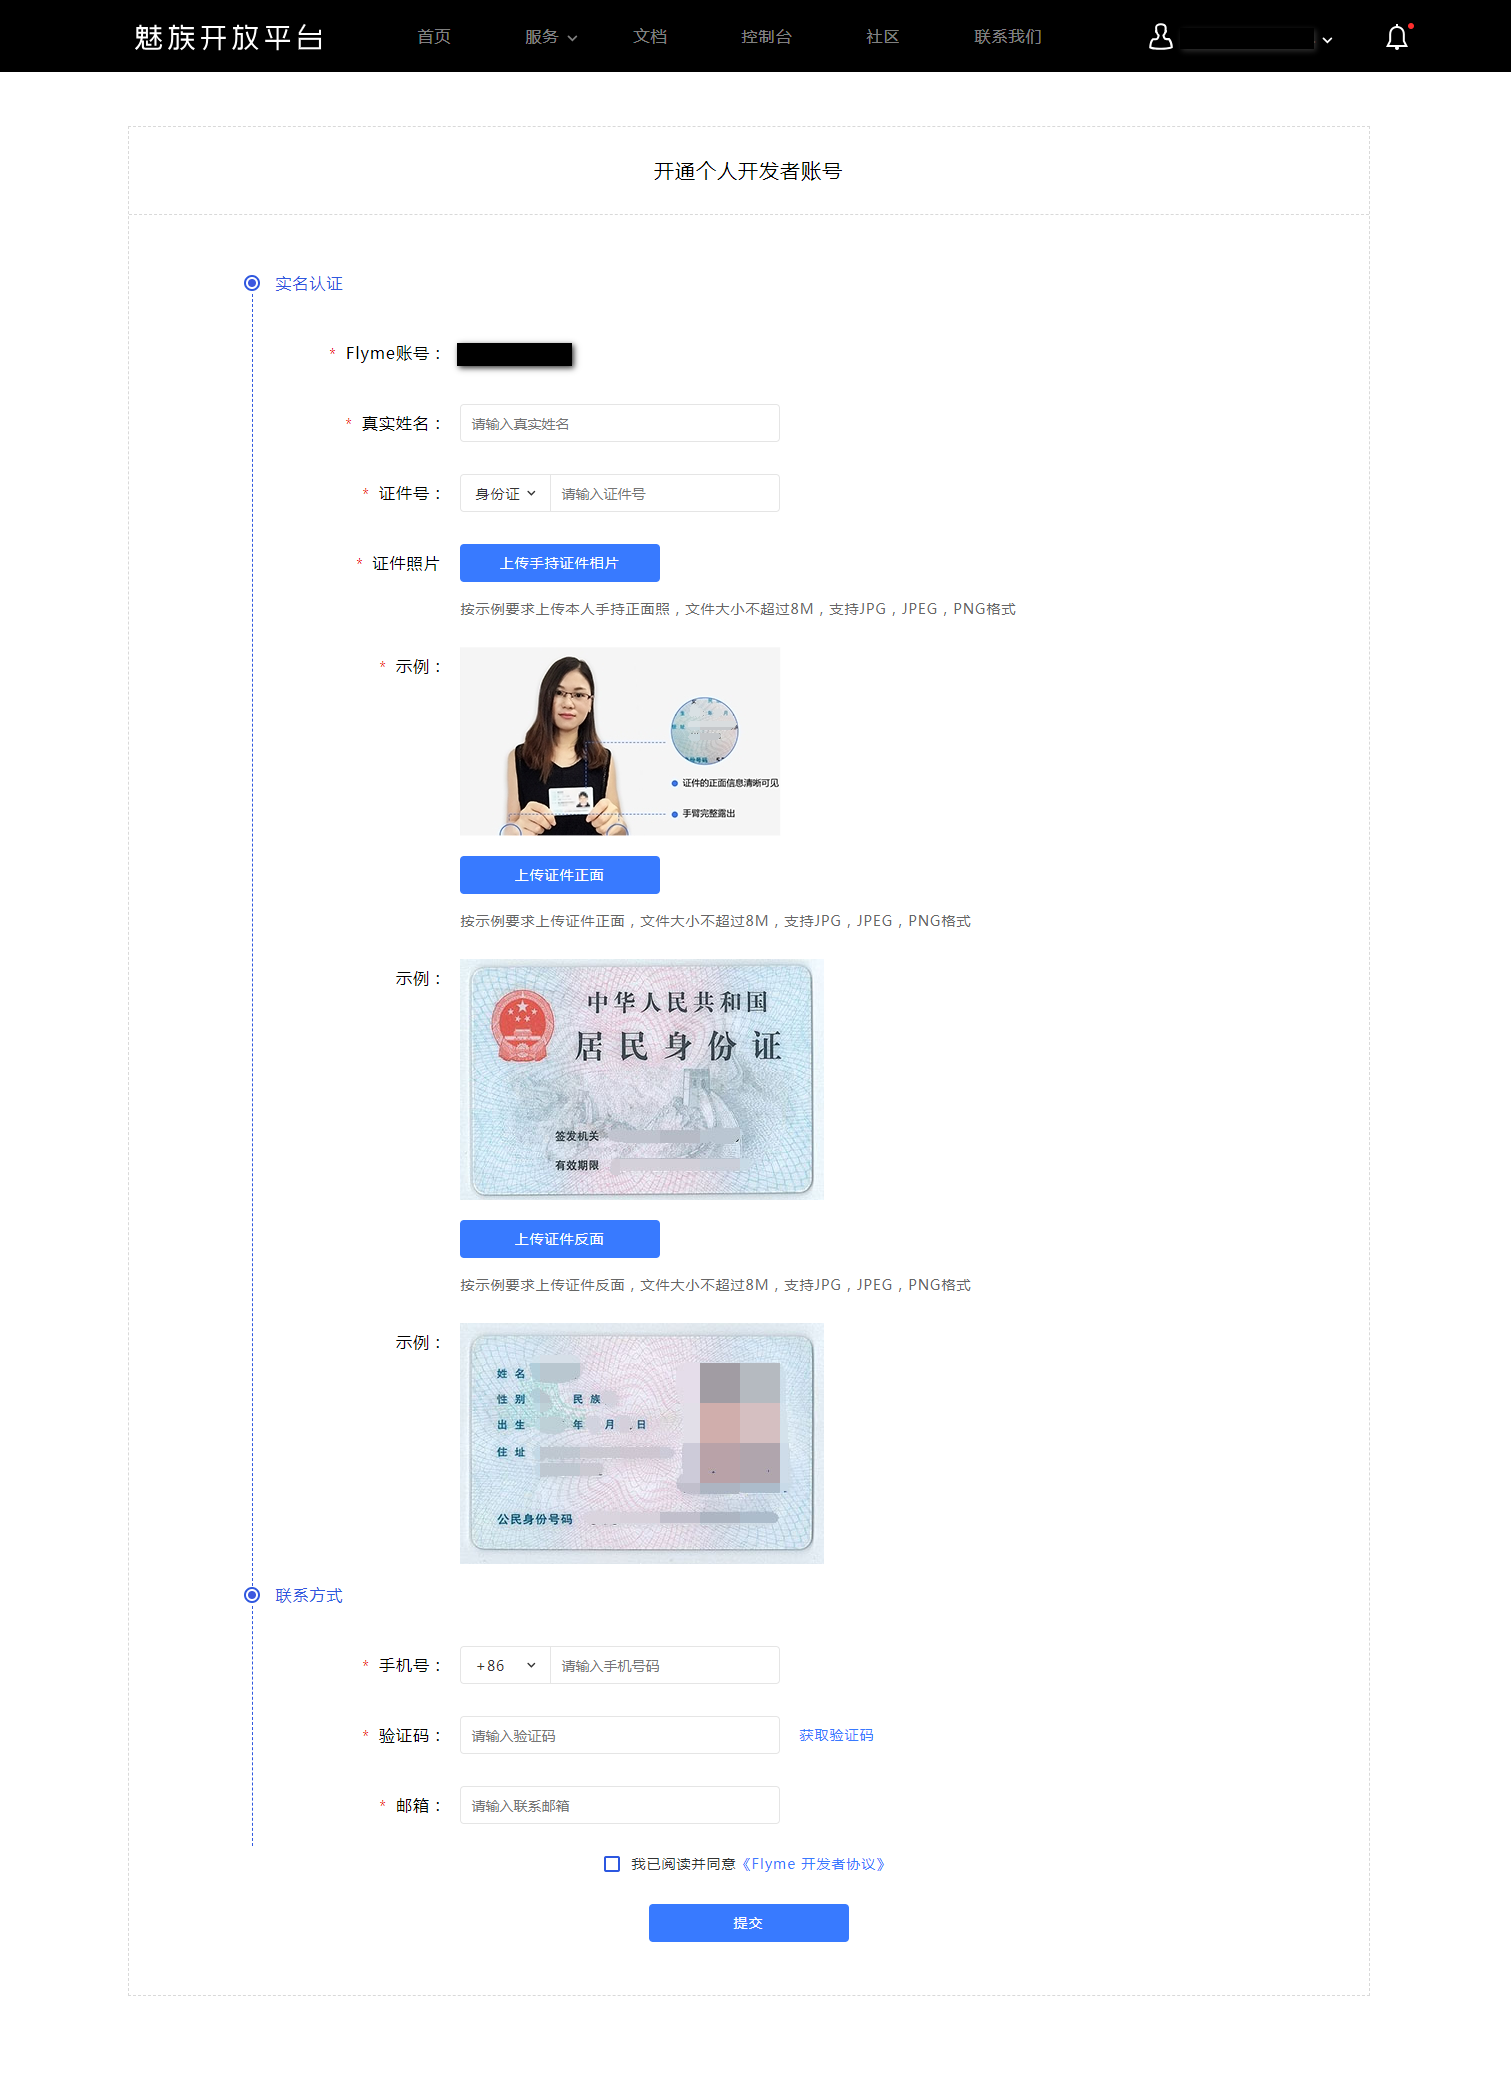 魅族开放平台开发者账户注册及认证流程介绍